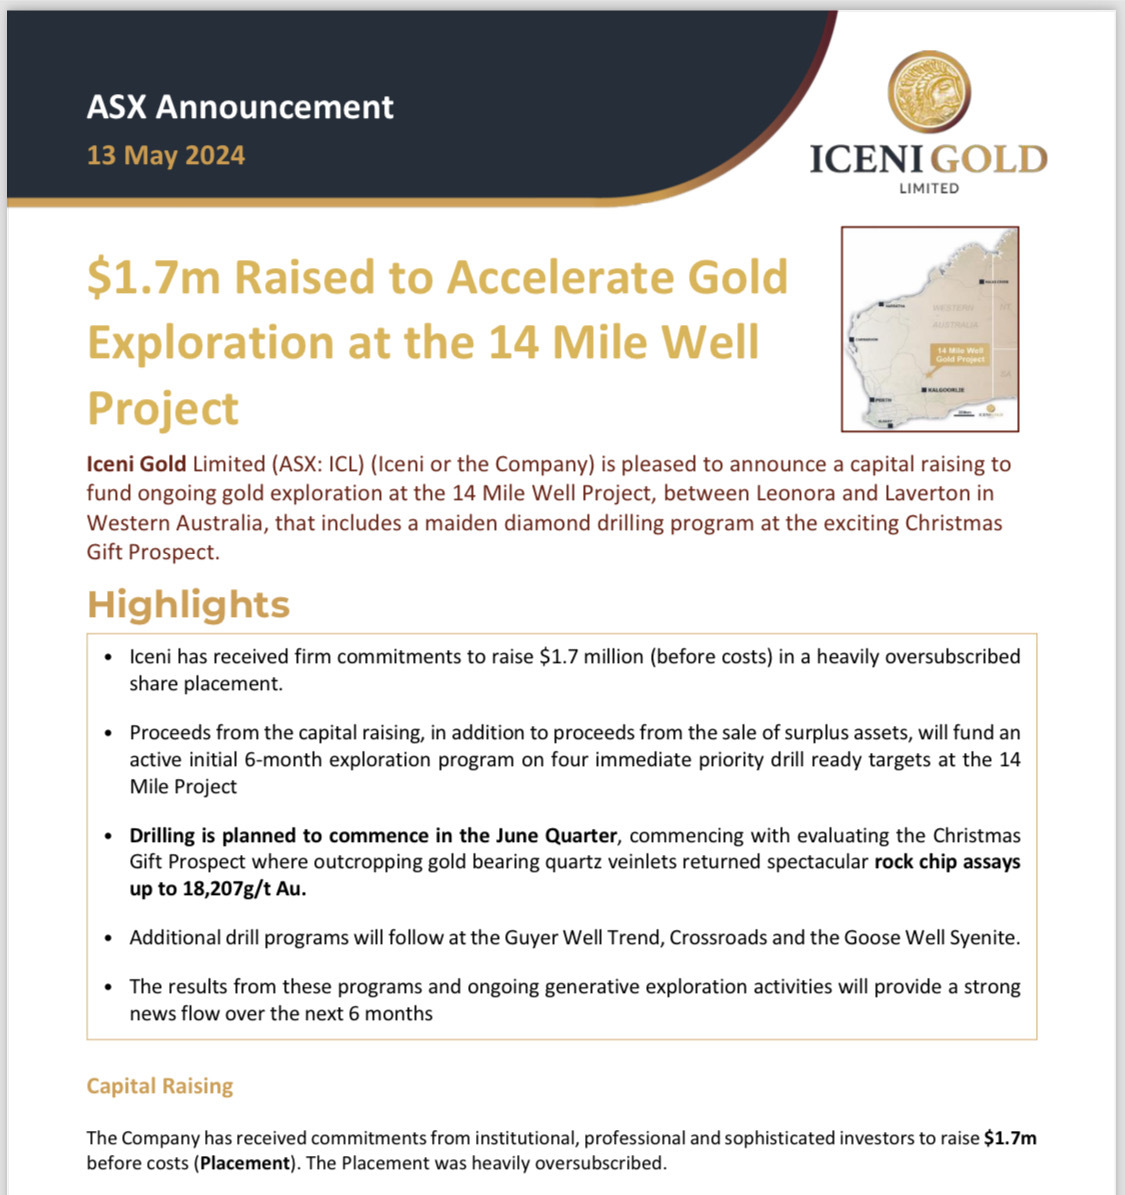 用於進行壯觀的高級發現和勘探進行黃金勘探的過度認購基金將在未來 6 個月的 ICL（Iceni Gold）提供強勁的新流量並獲利